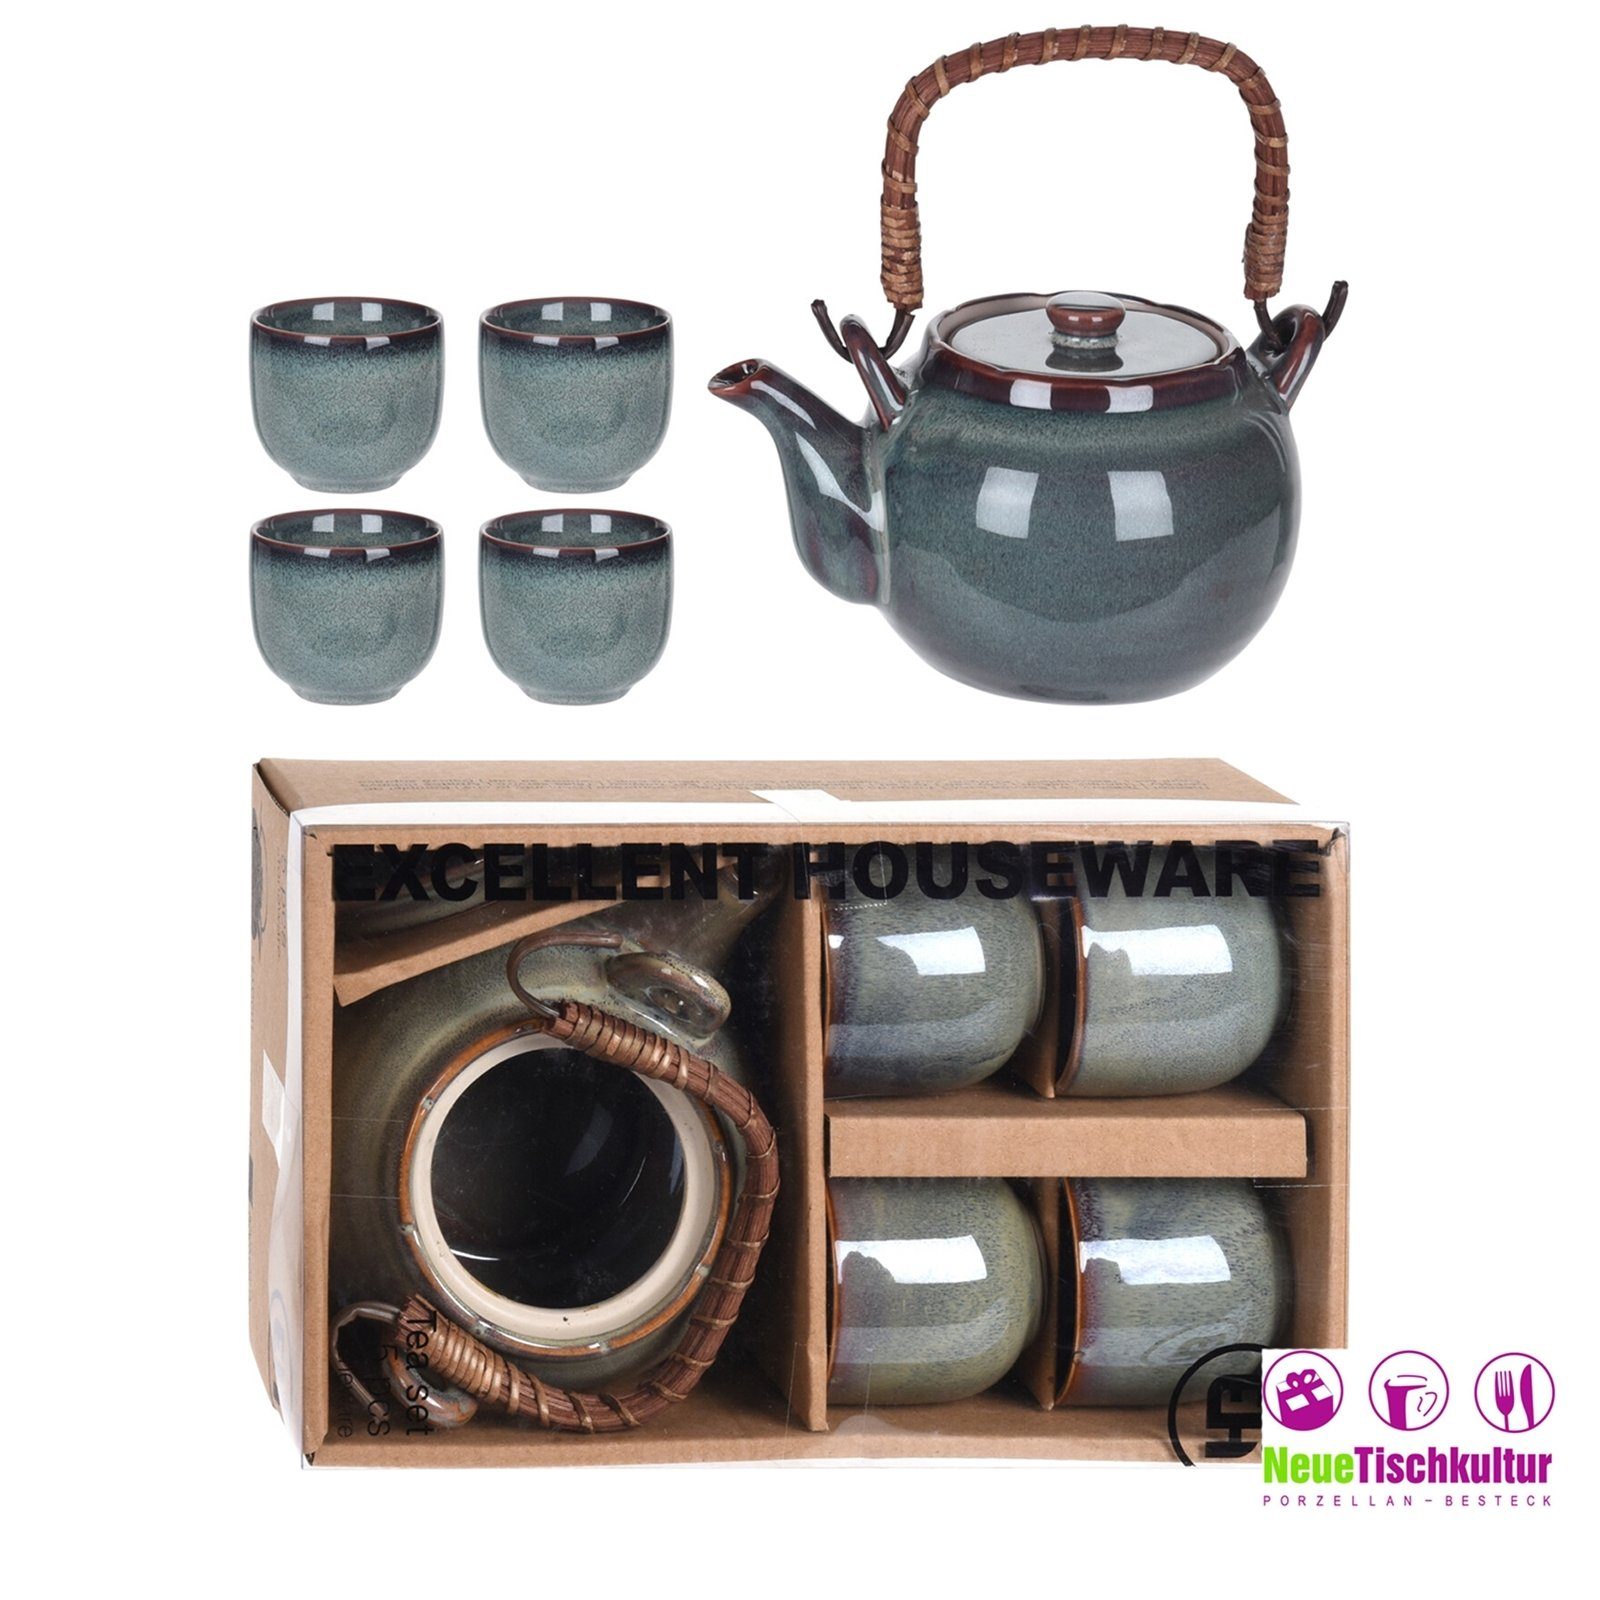 Neuetischkultur Teekanne Keramik Teekanne Becher mit 4